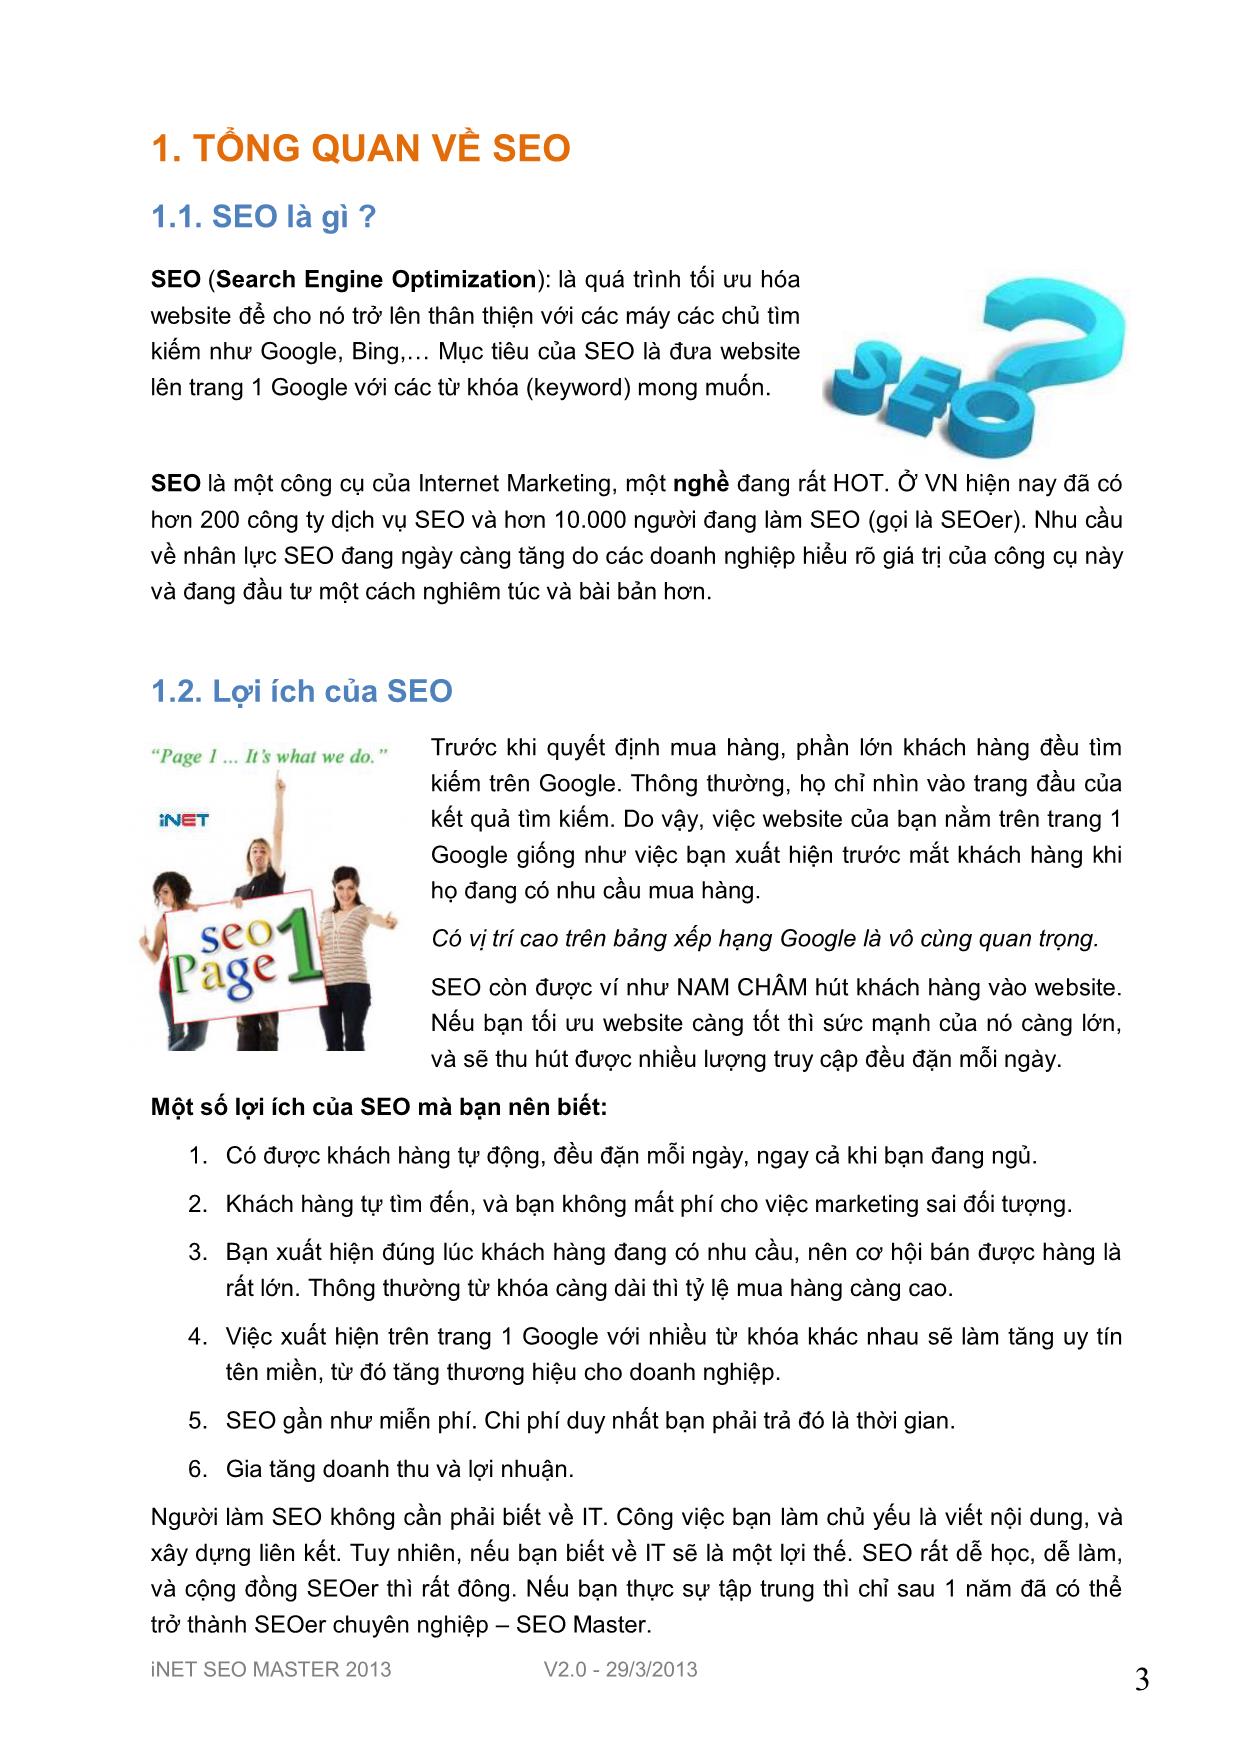 Hướng dẫn seo website căn bản trang 3